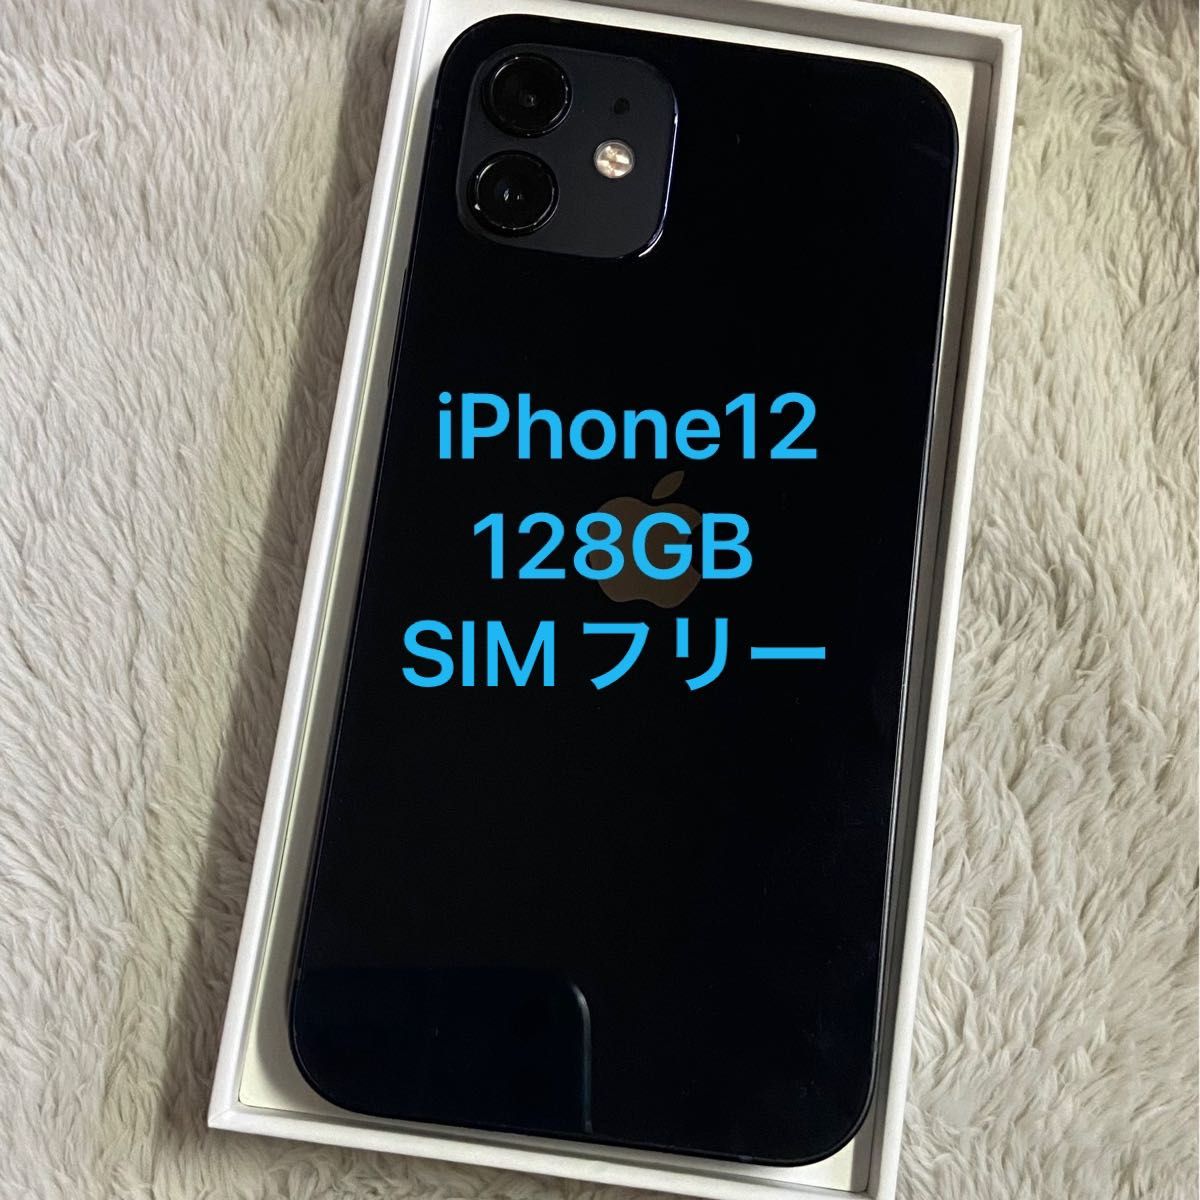 Apple iPhone12 本体 ブラック 128GB SIMフリーシムフリー iPhone12 黒